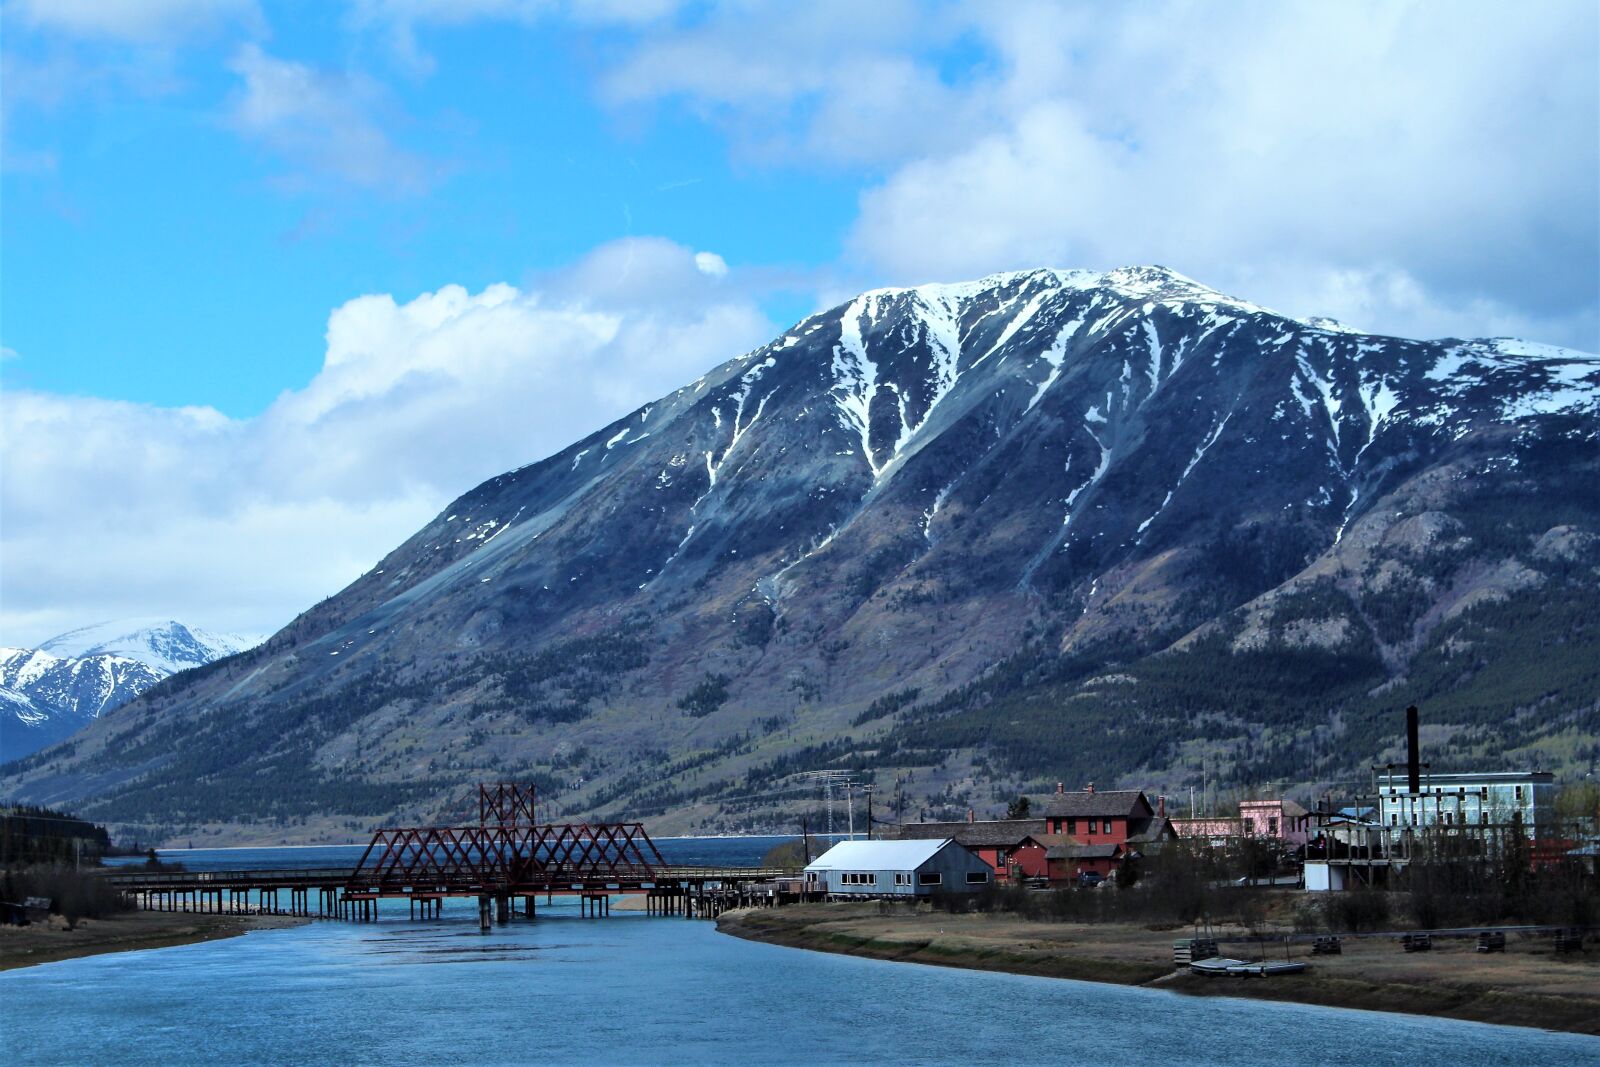 Canon EOS 100D (EOS Rebel SL1 / EOS Kiss X7) sample photo. Alaska, mountain, landscape photography